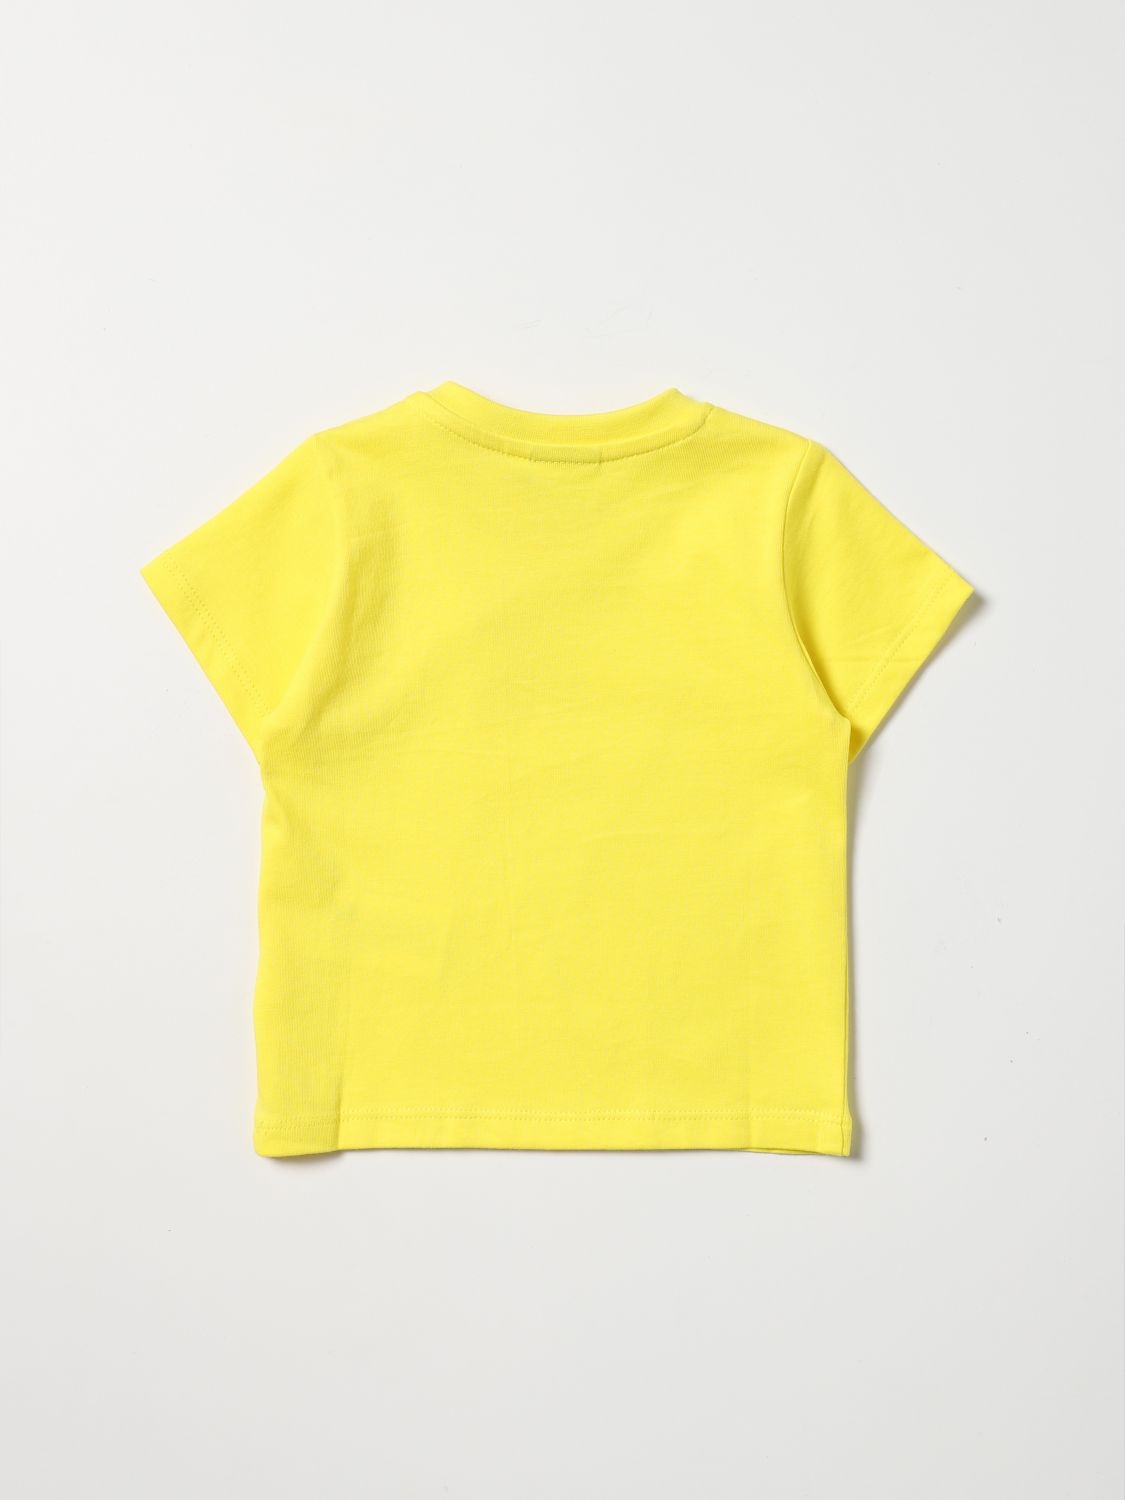 T-shirt Hugo Boss: Hugo Boss t-shirt for baby yellow 2